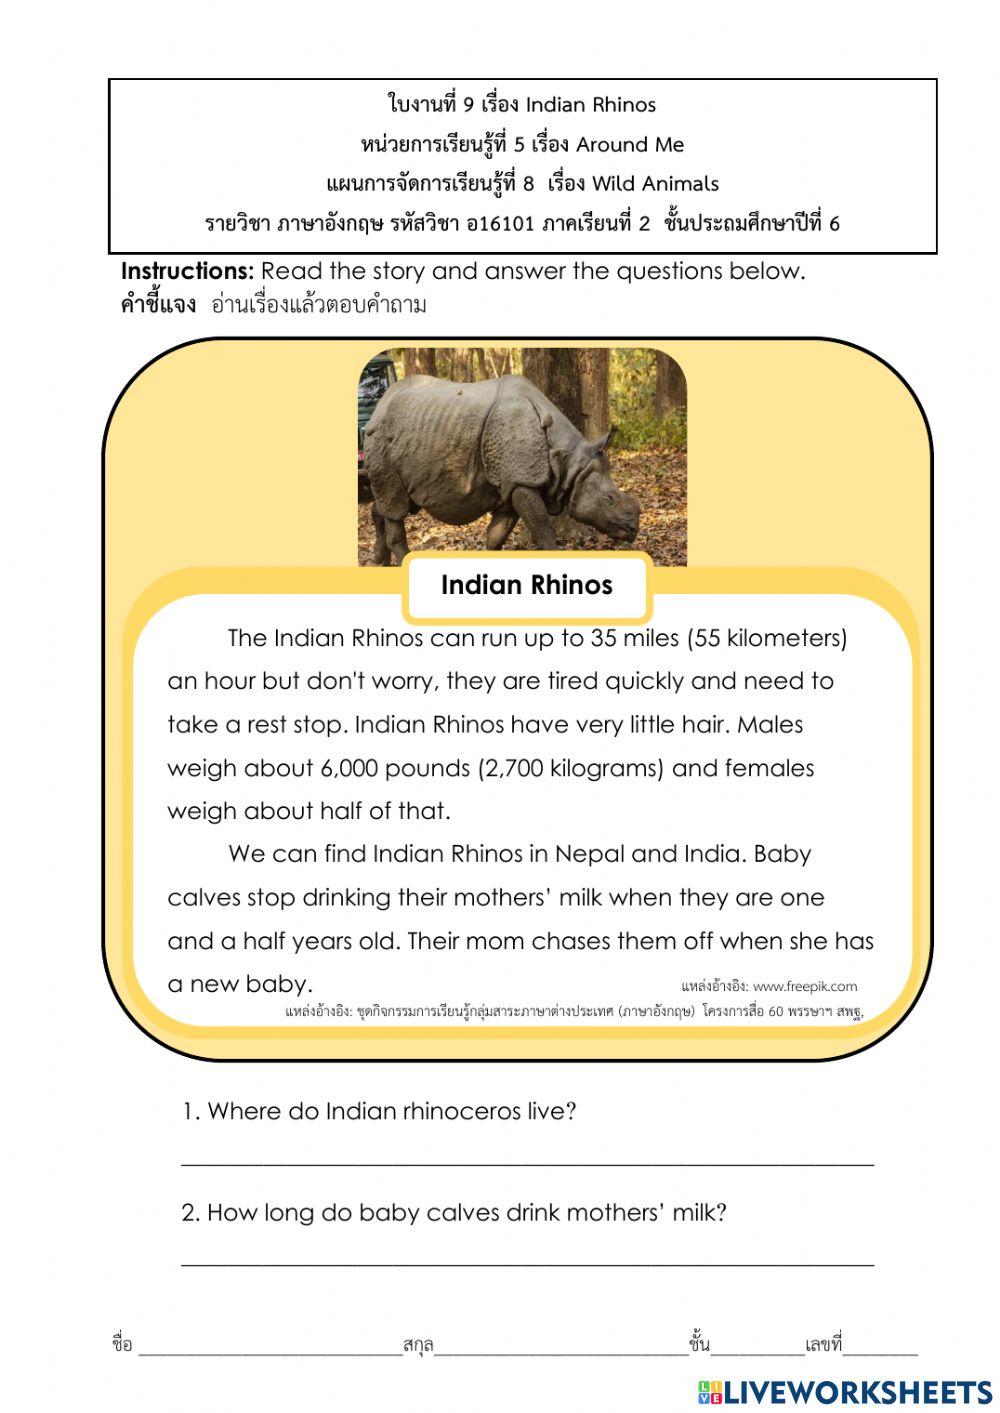 Animals Word Search :Wild Animals